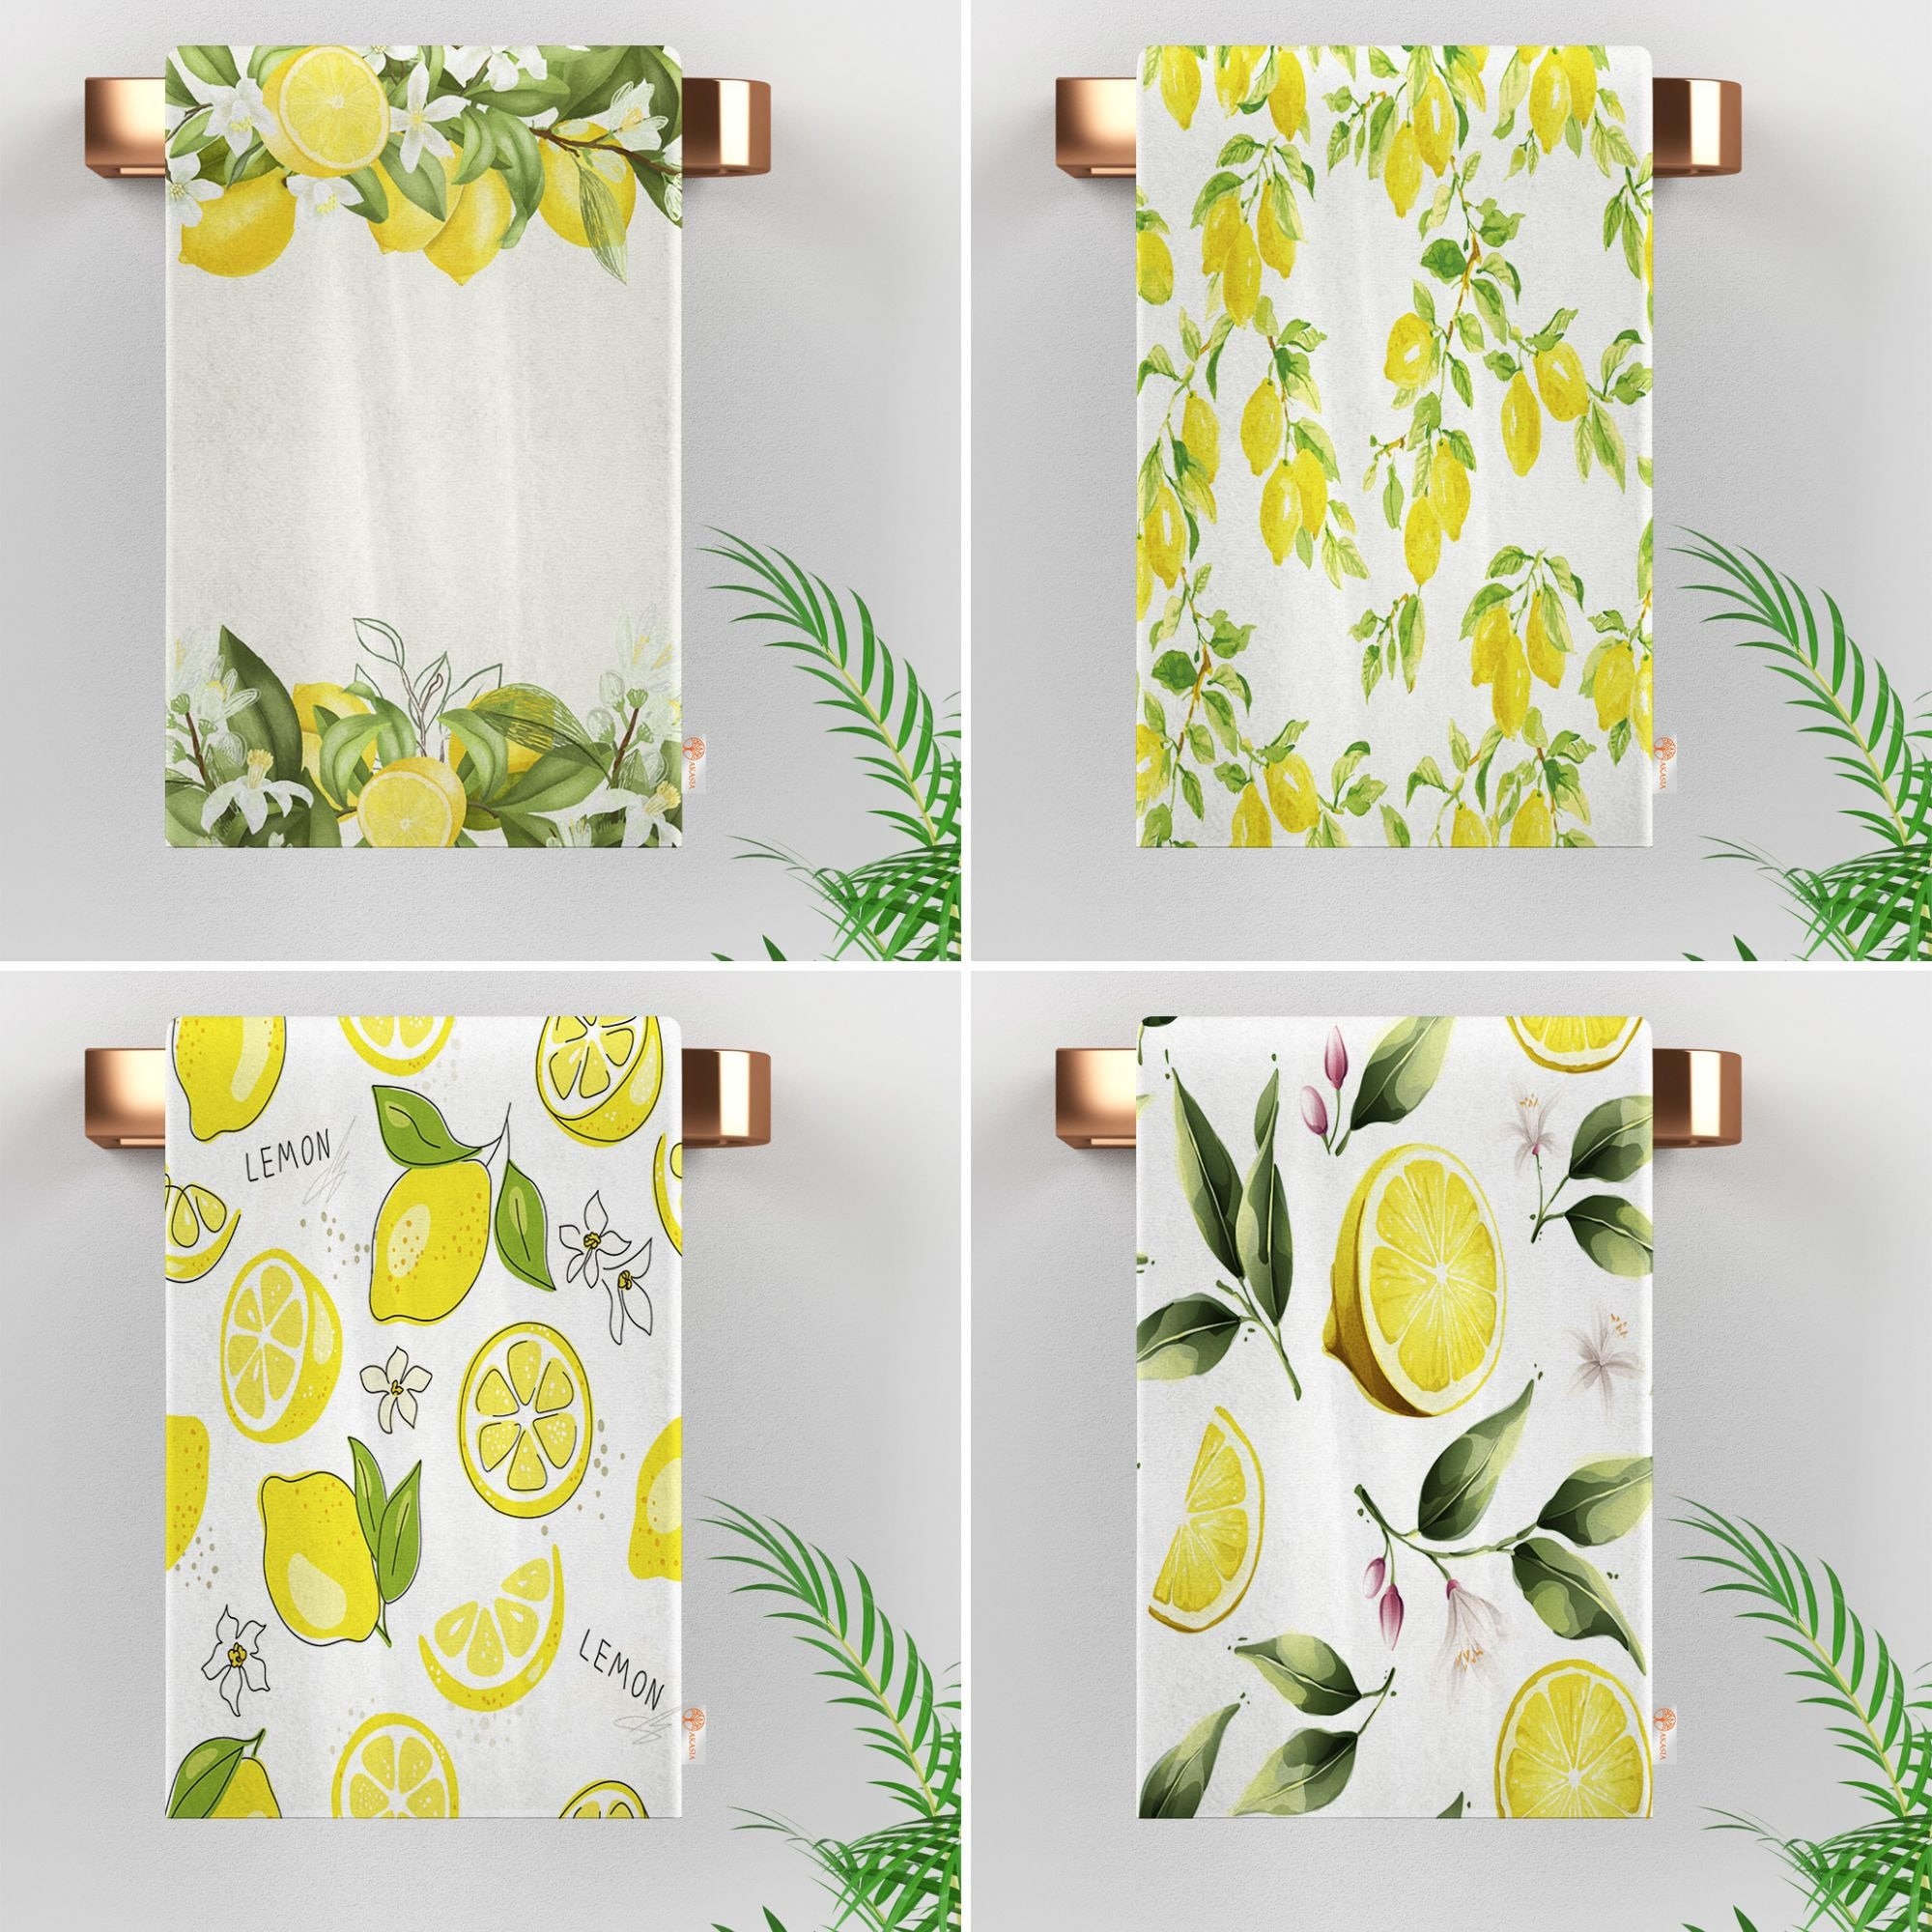 KOALAND Flour Sack Towels, Set of 3 Oversized Tea Towels for Kitchen with  Printed Lemon Designs, 100-percent Cotton, Cute Kitchen Towel Set, Lemon